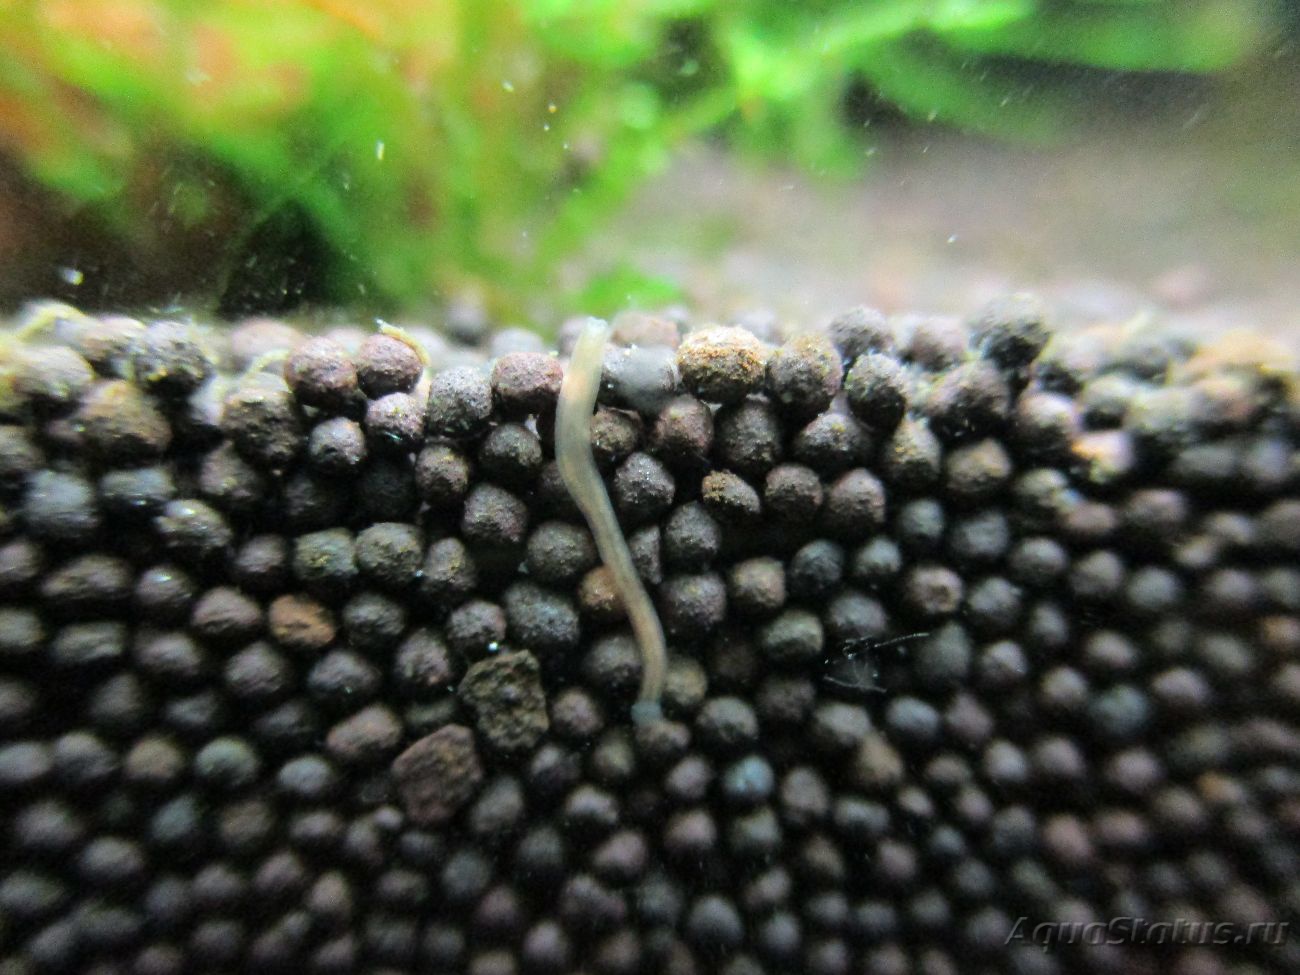 По стенкам аквариума ползают маленькие белые червячки